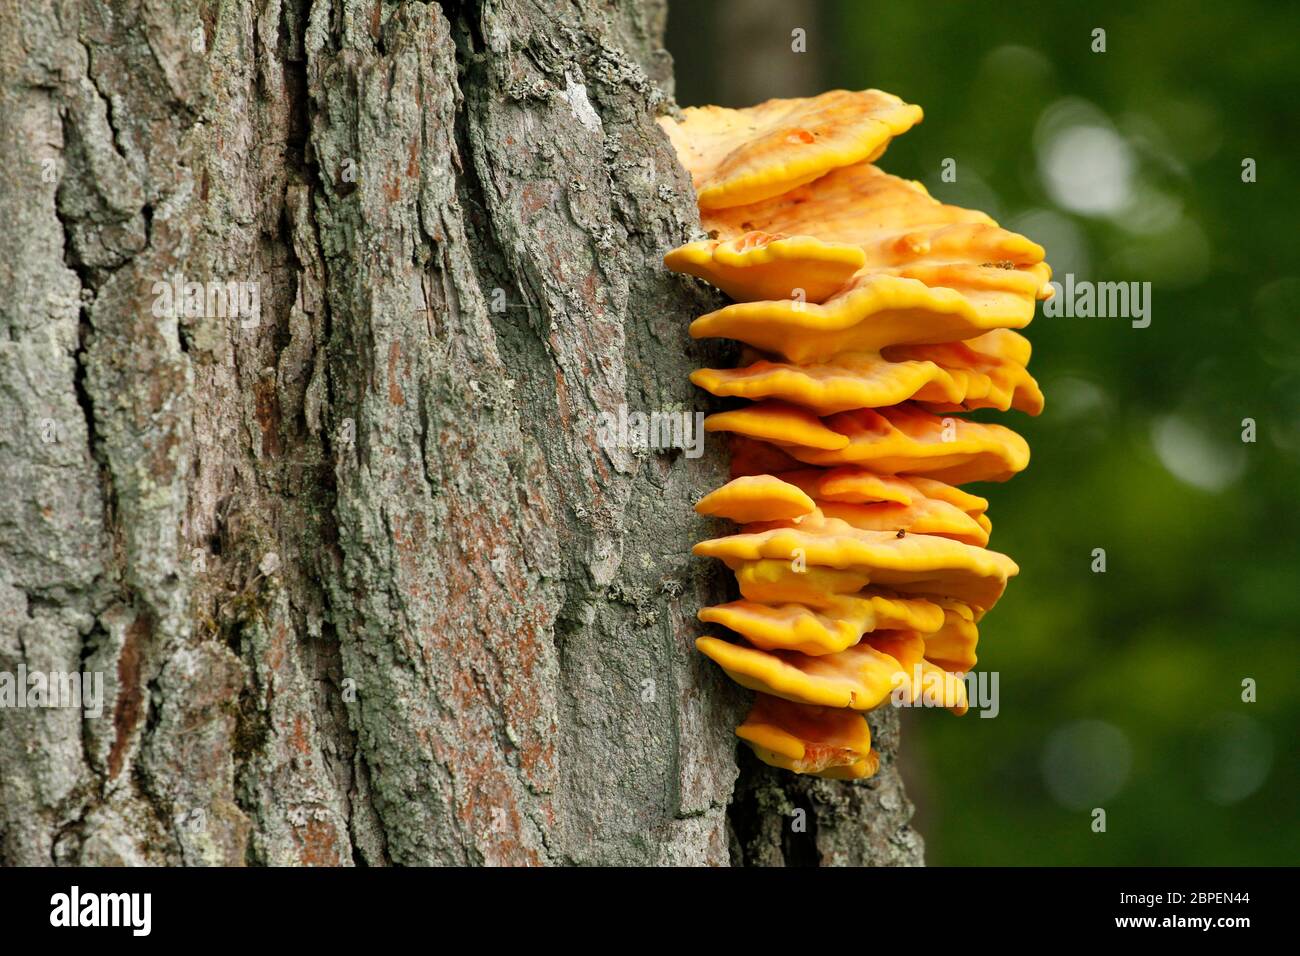 Rikkikääpä tammen rungossa.|||Laetiporus sulphureus bracket fungus on the side of oak trunk. Stock Photo